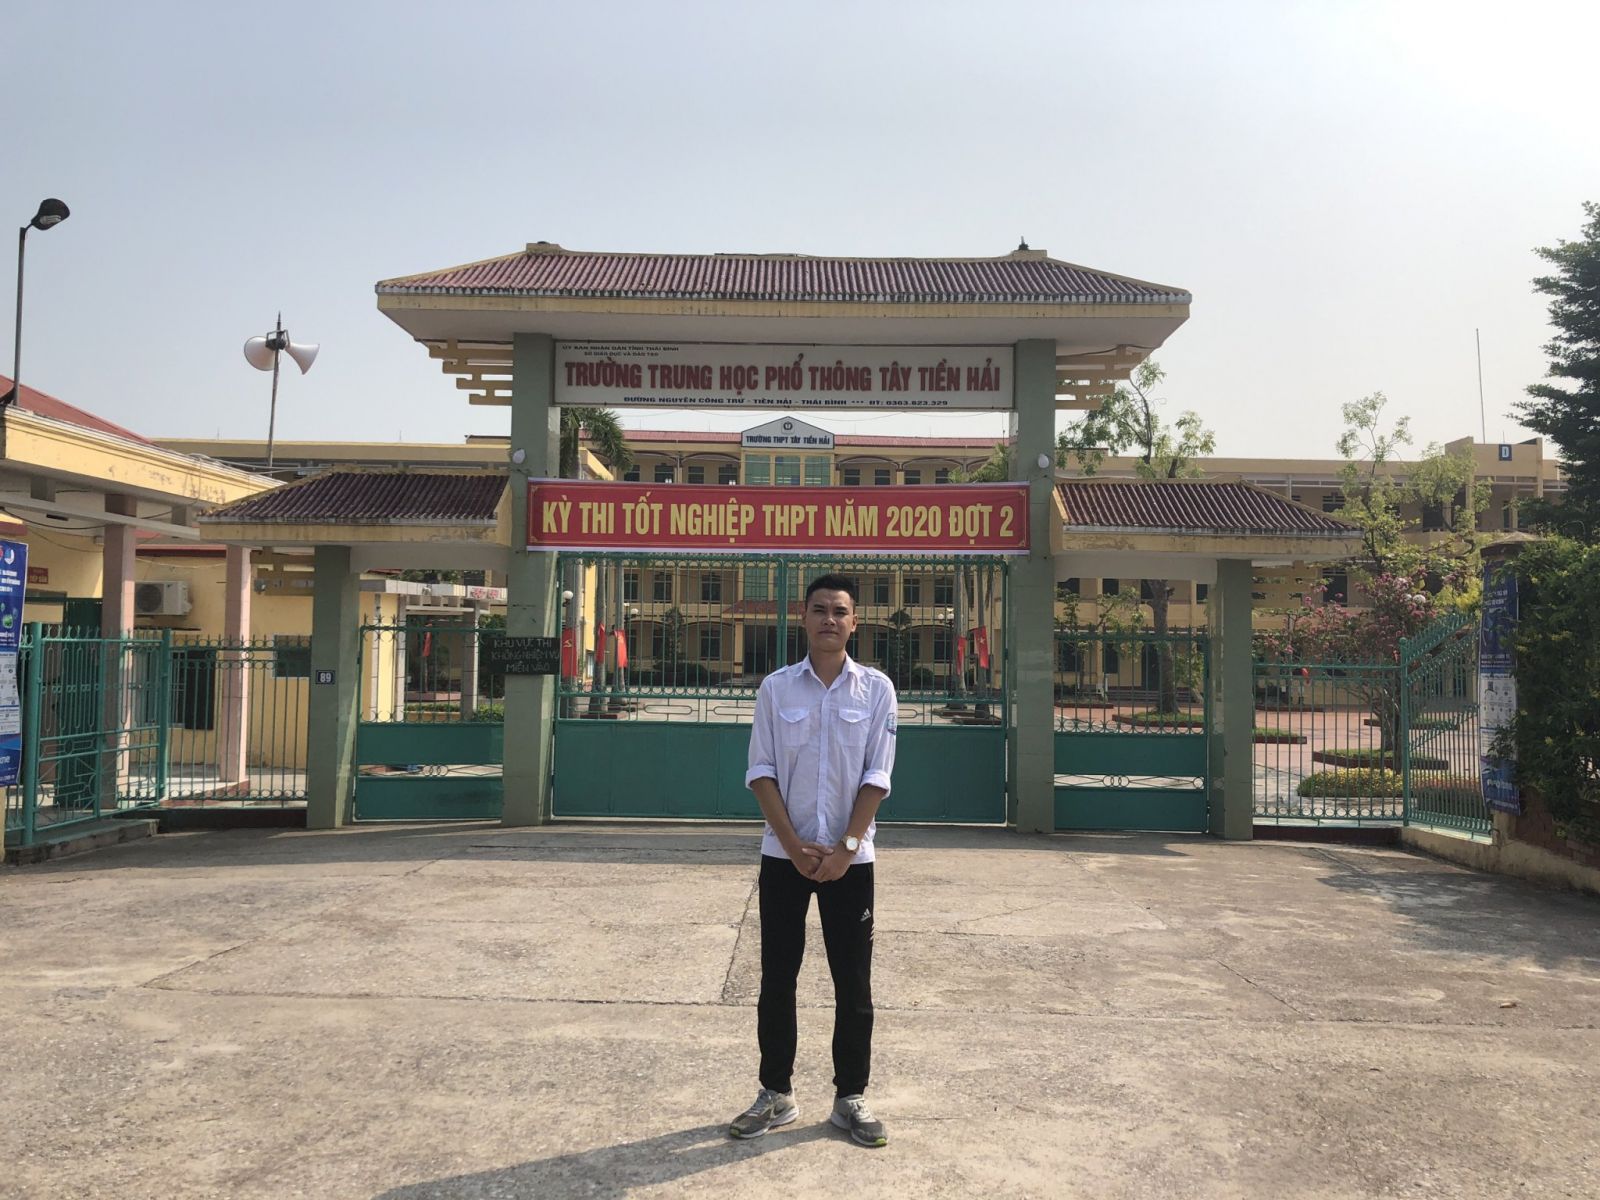 Em Đỗ Trọng Thủy, thí sinh duy nhất của Hải Phòng dự thi tại Điểm thi Trường THPT Tây Tiền Hải